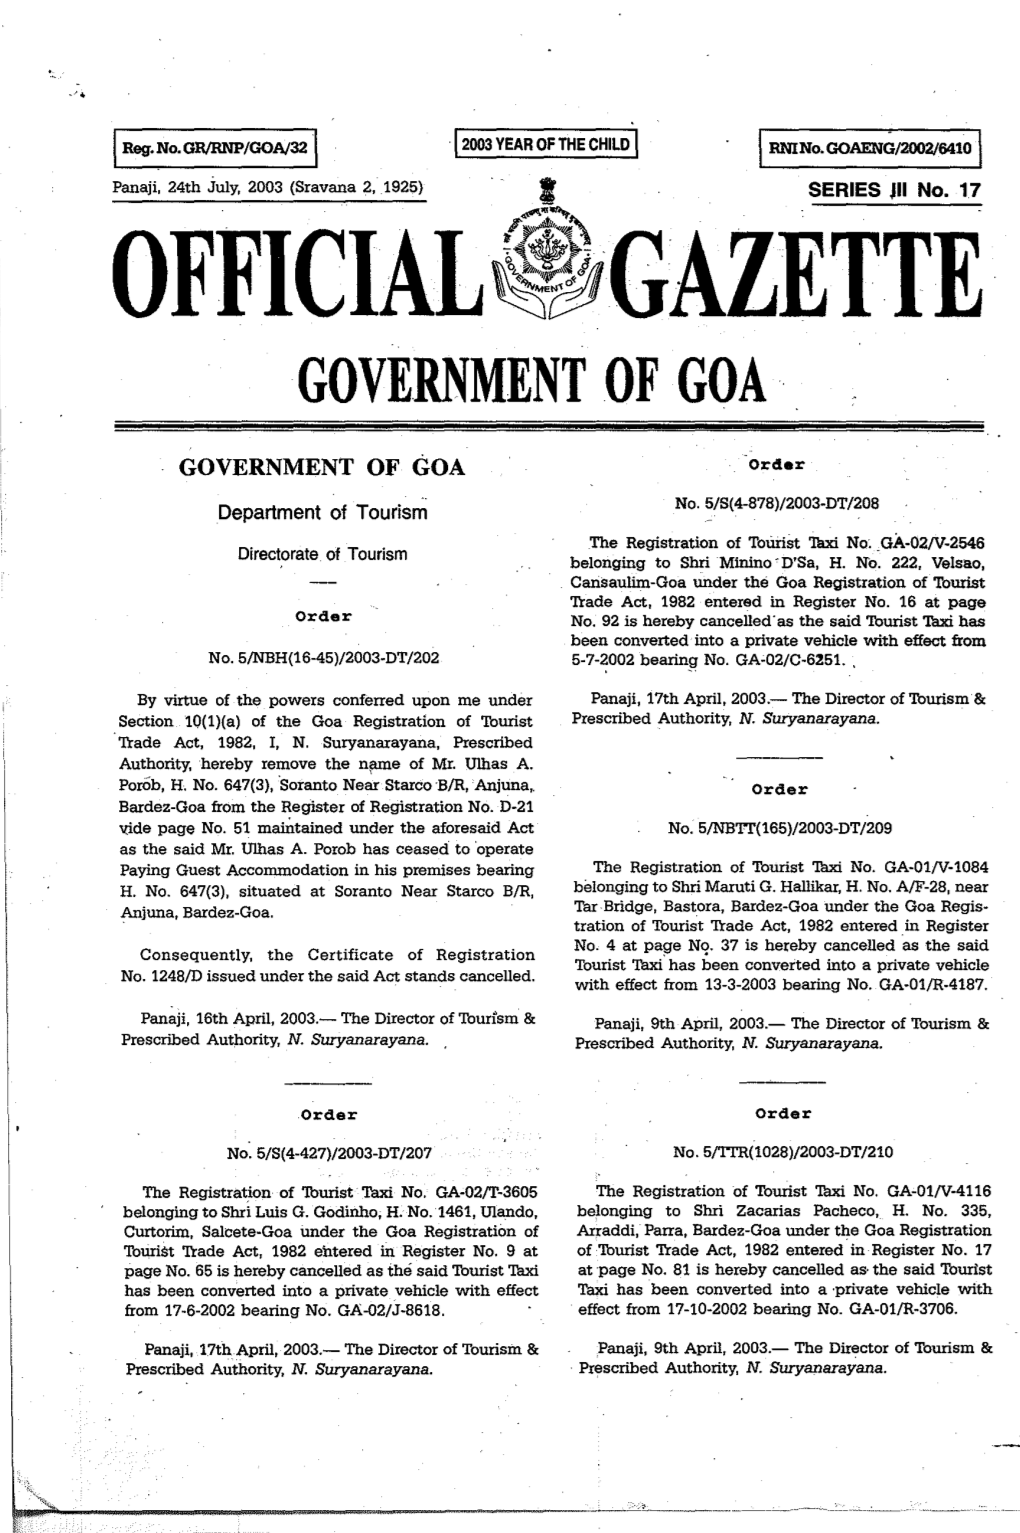 Official~~Gazette Government of Goa